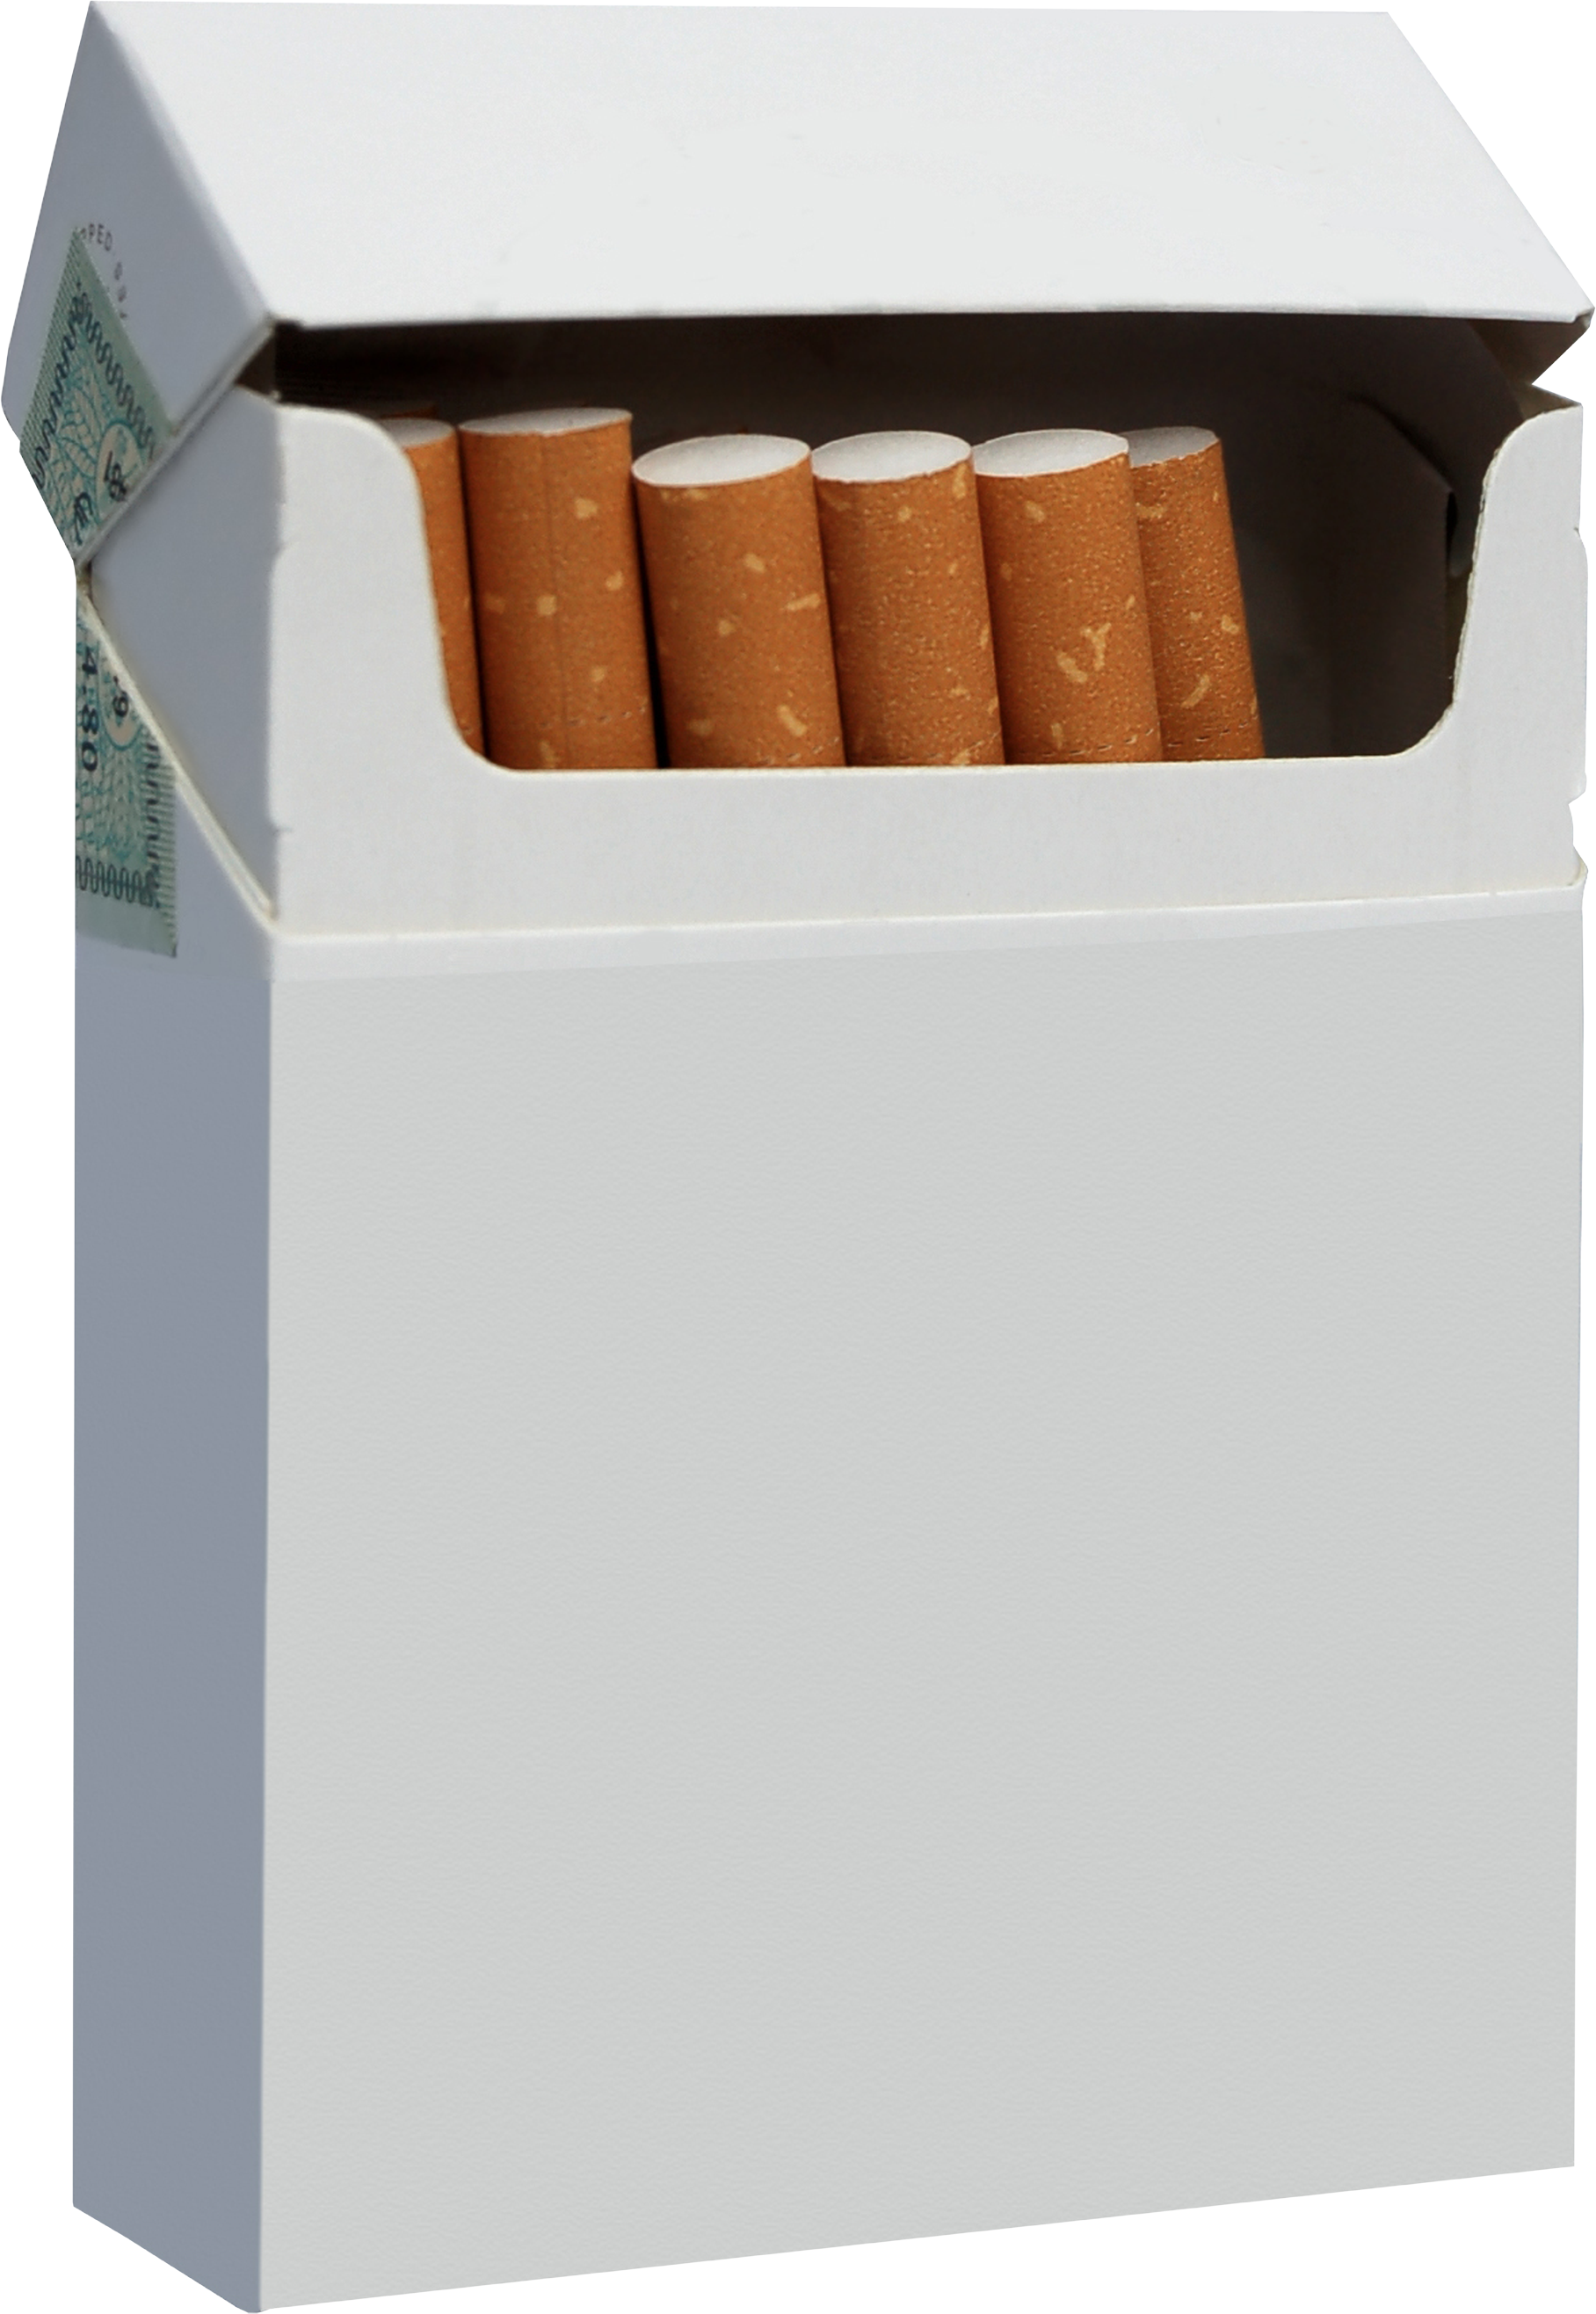 Eine Packung Zigaretten